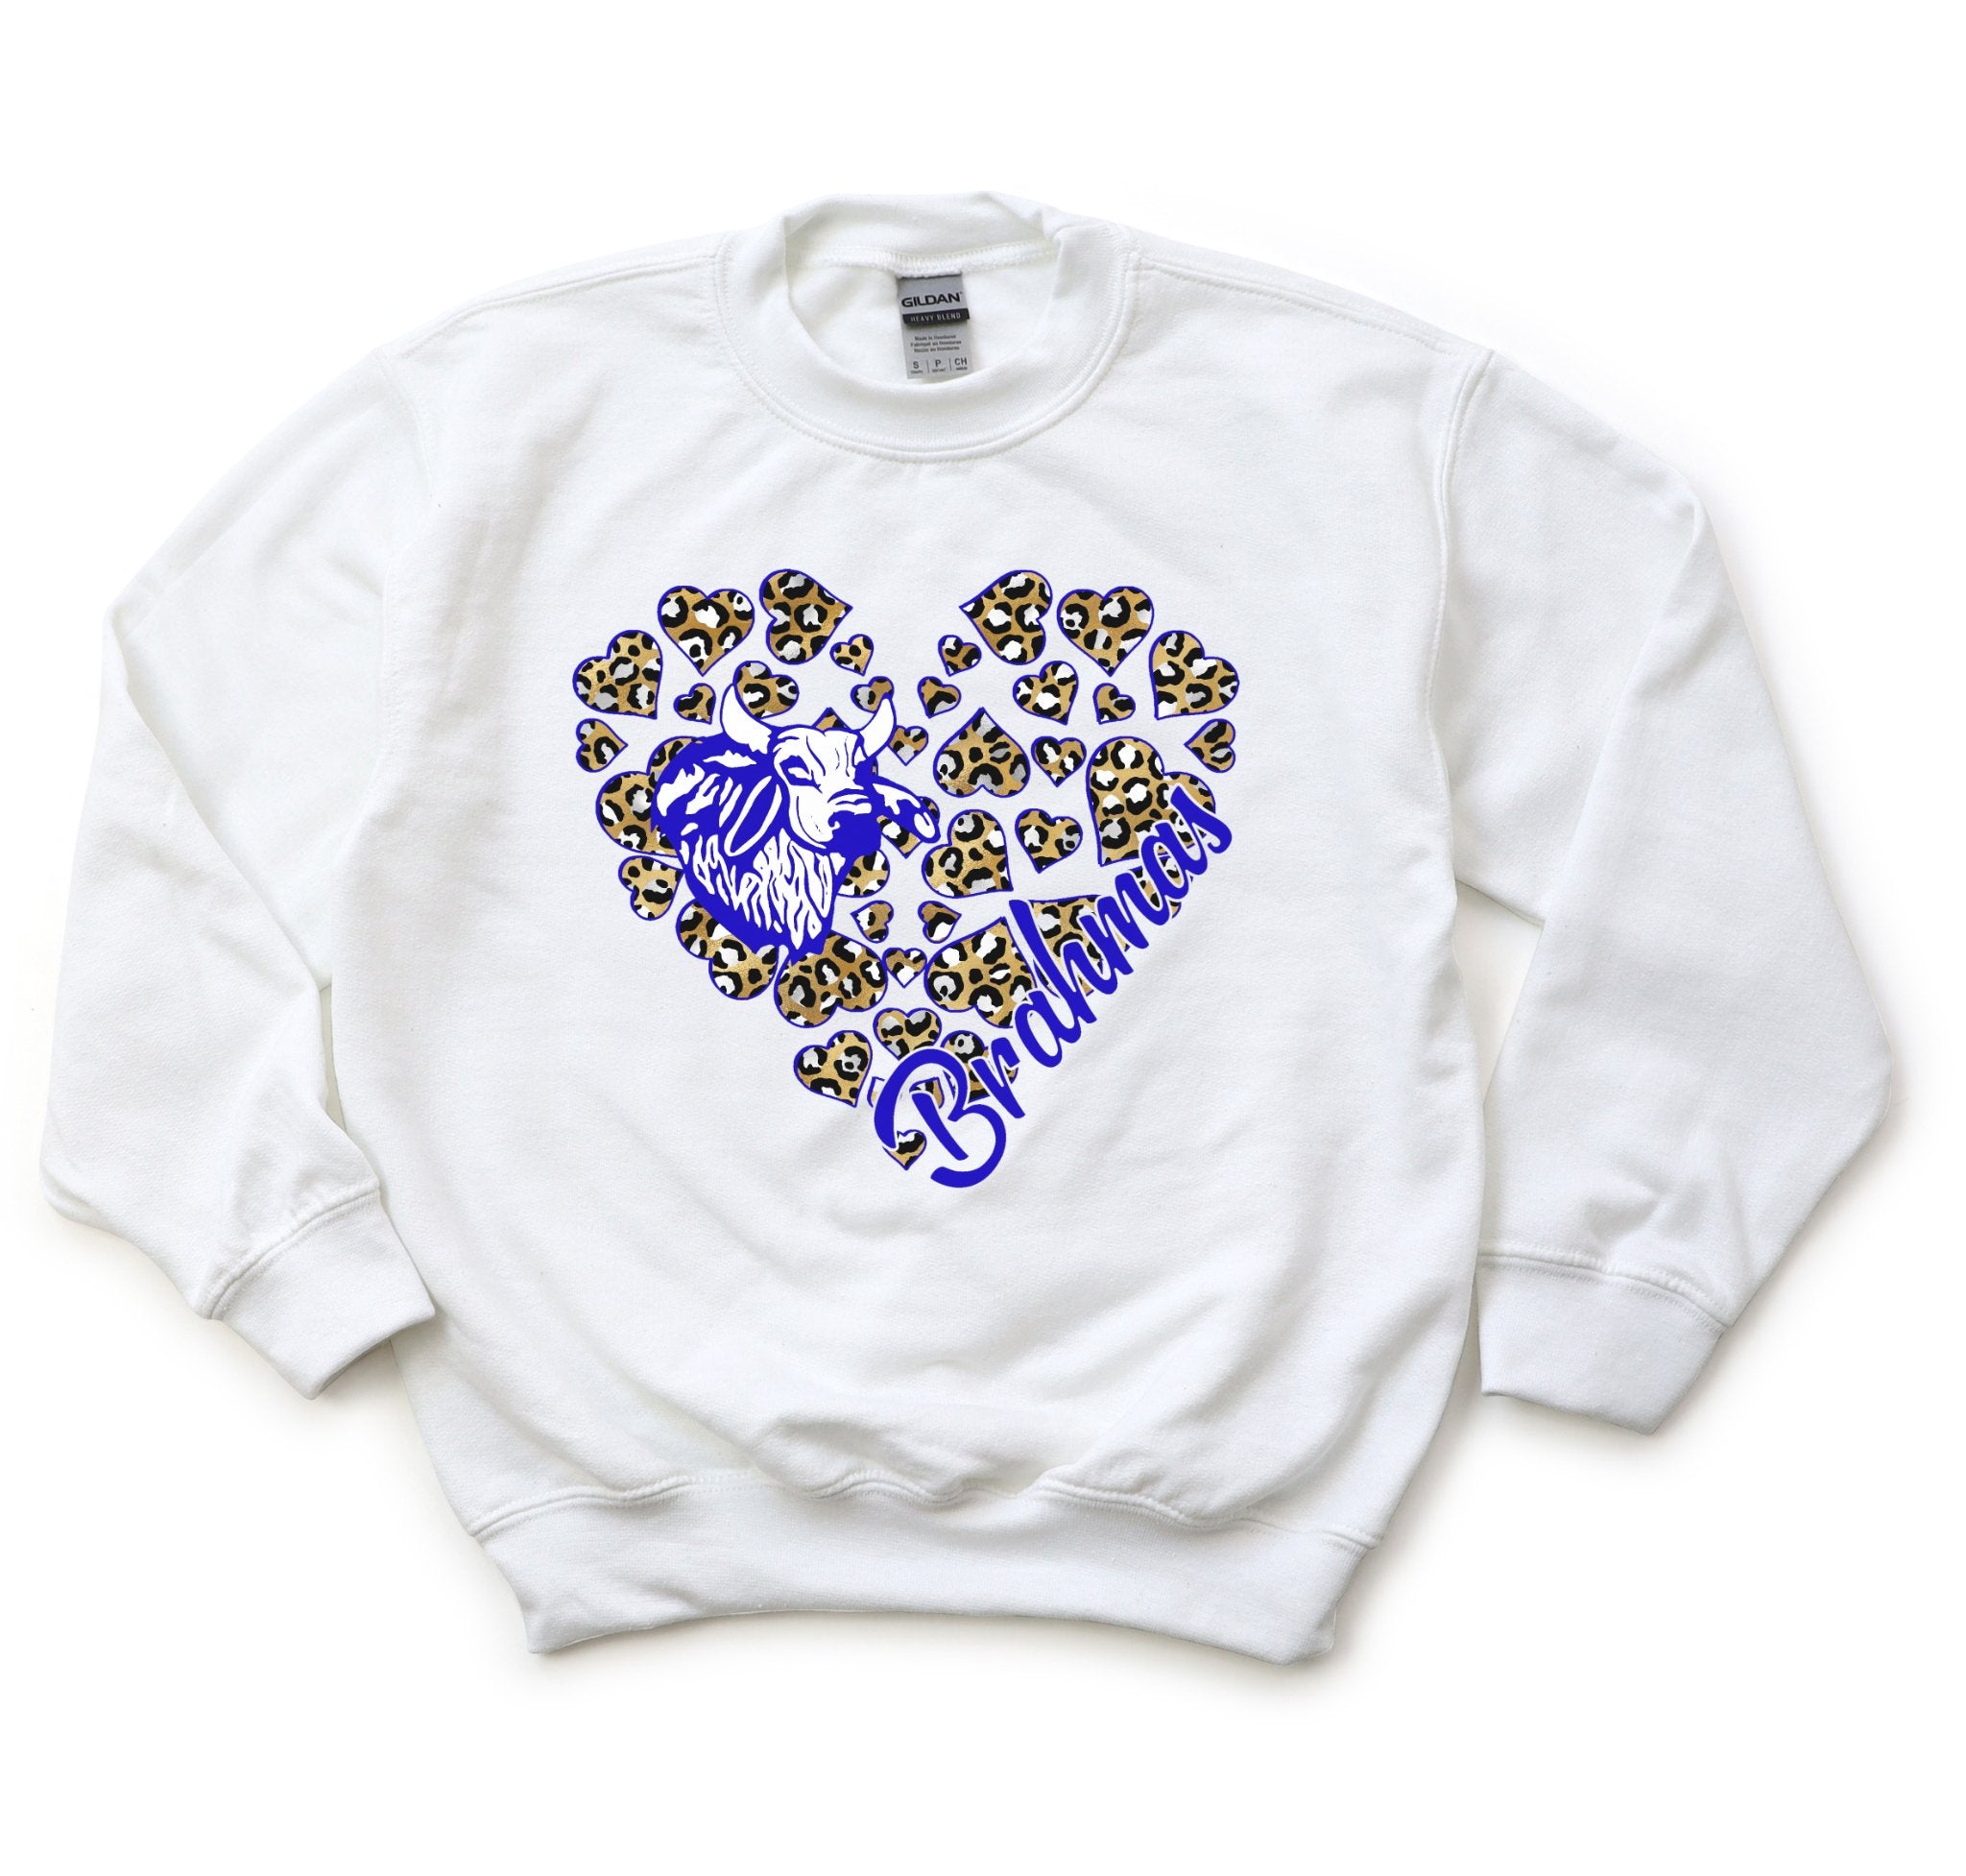 Brahmas Heart Youth Sweatshirt - Trendznmore